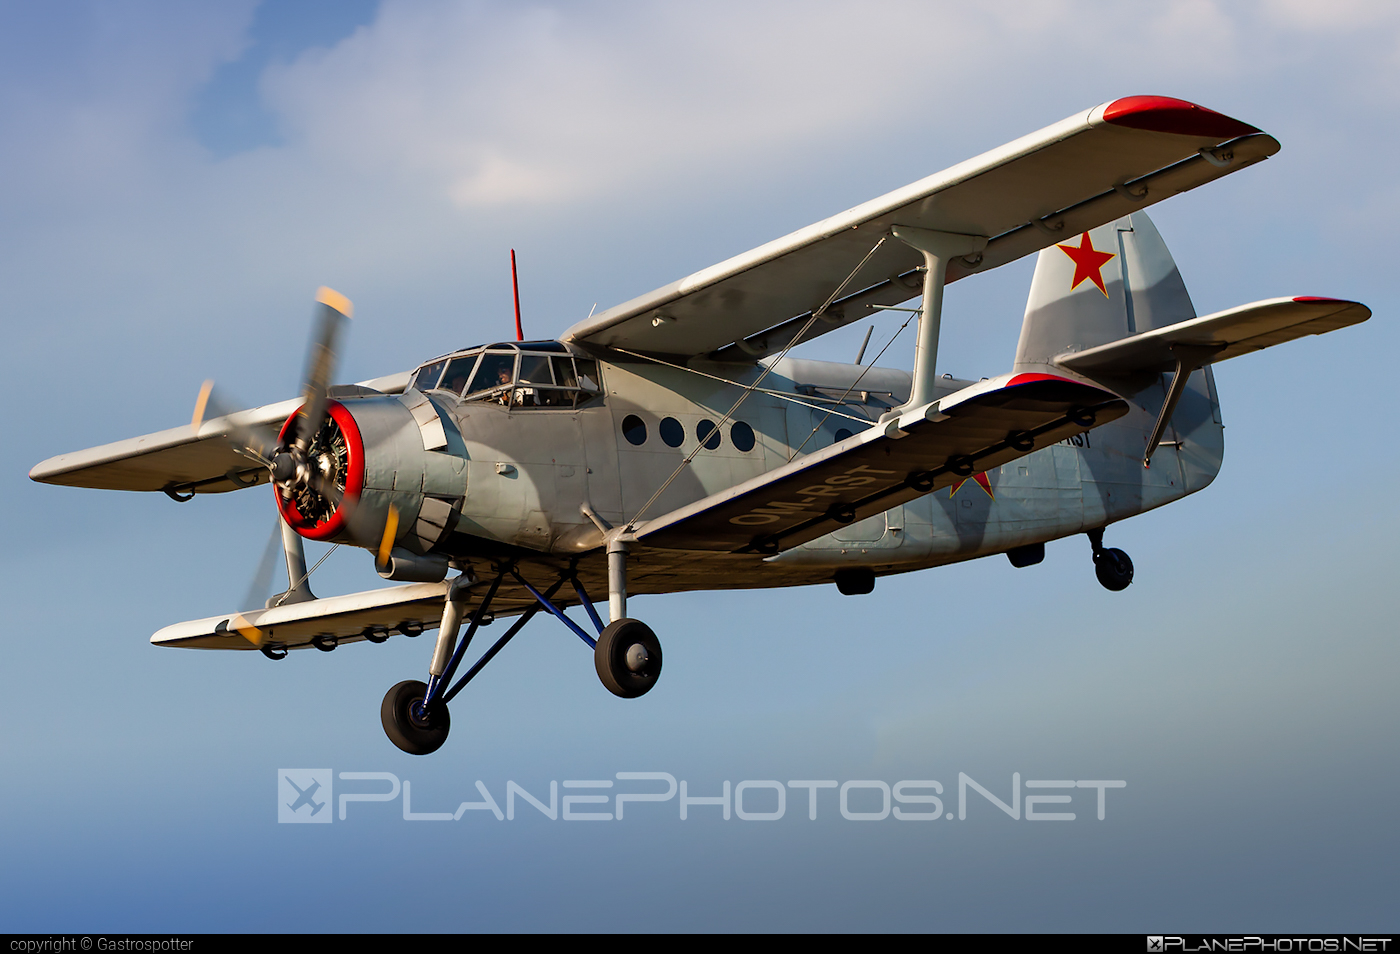 Antonov An-2TD - OM-RST operated by Private operator #an2 #an2td #antonov #antonov2